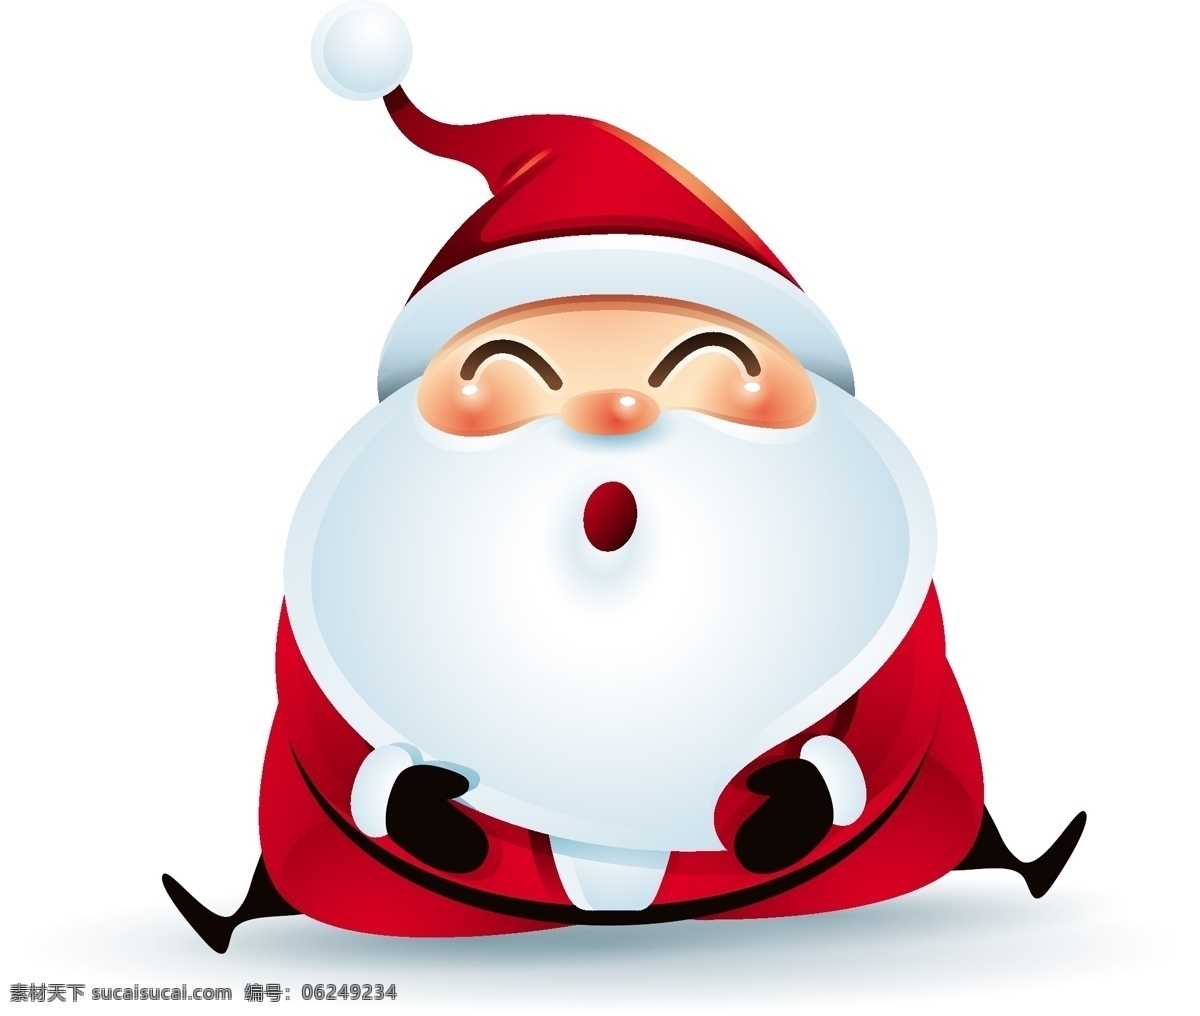 坐在 地上 圣诞节 老人 矢量 笑脸 胖胖的 红色 白胡子 卡通 人物 形象 节日 装饰